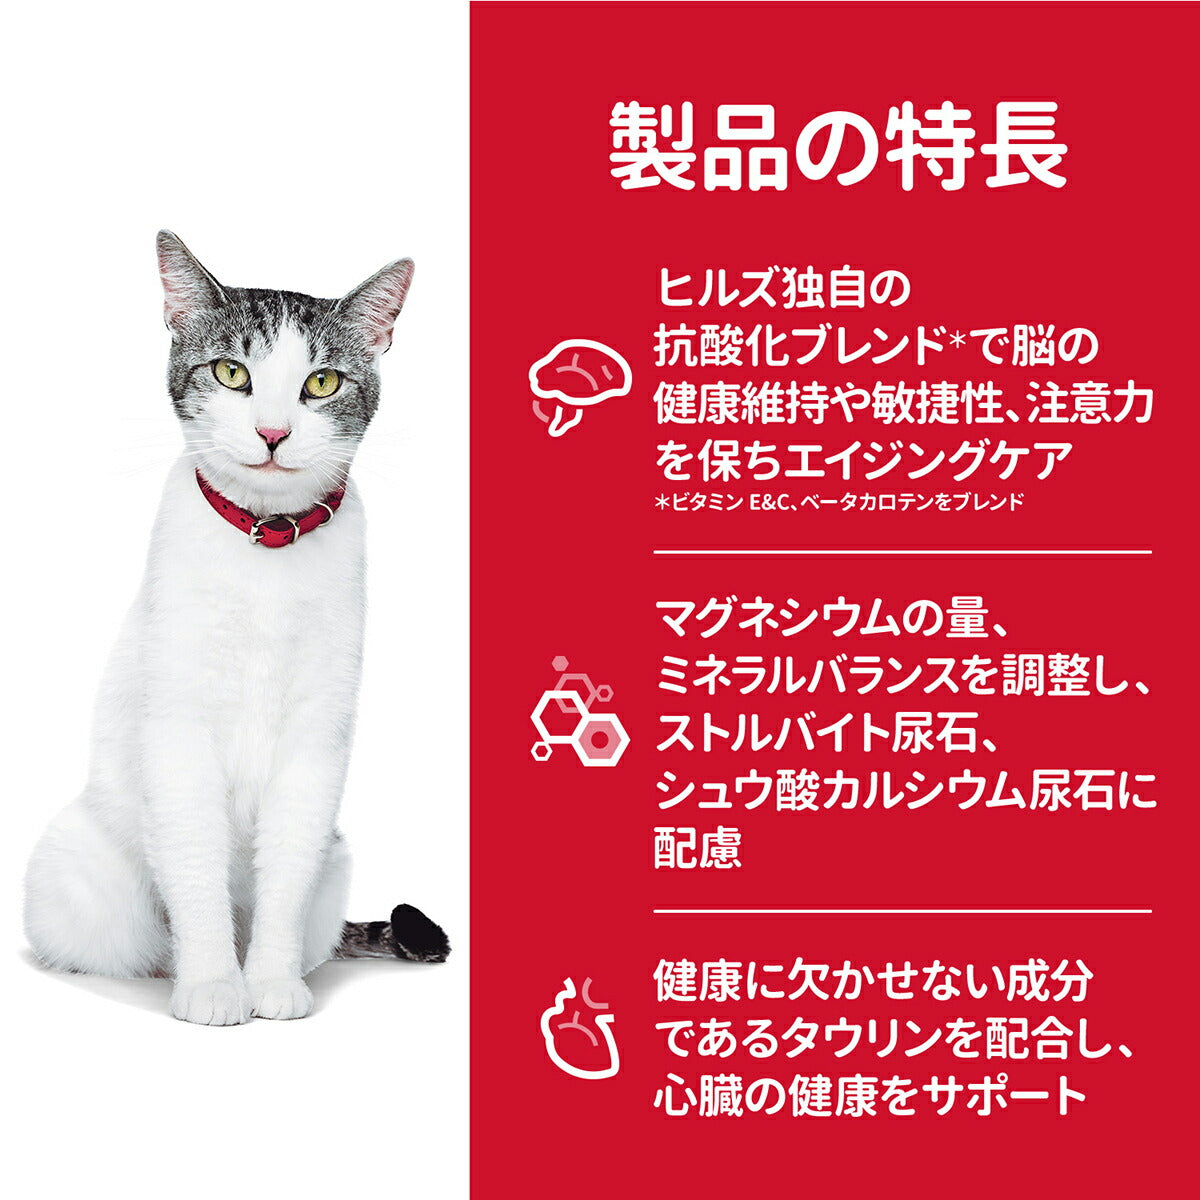 サイエンス・ダイエット シニアプラス チキン 高齢猫用 11歳以上 1.8kg ヒルズ キャットフード ドライフード 総合栄養食 着色料・香料不使用